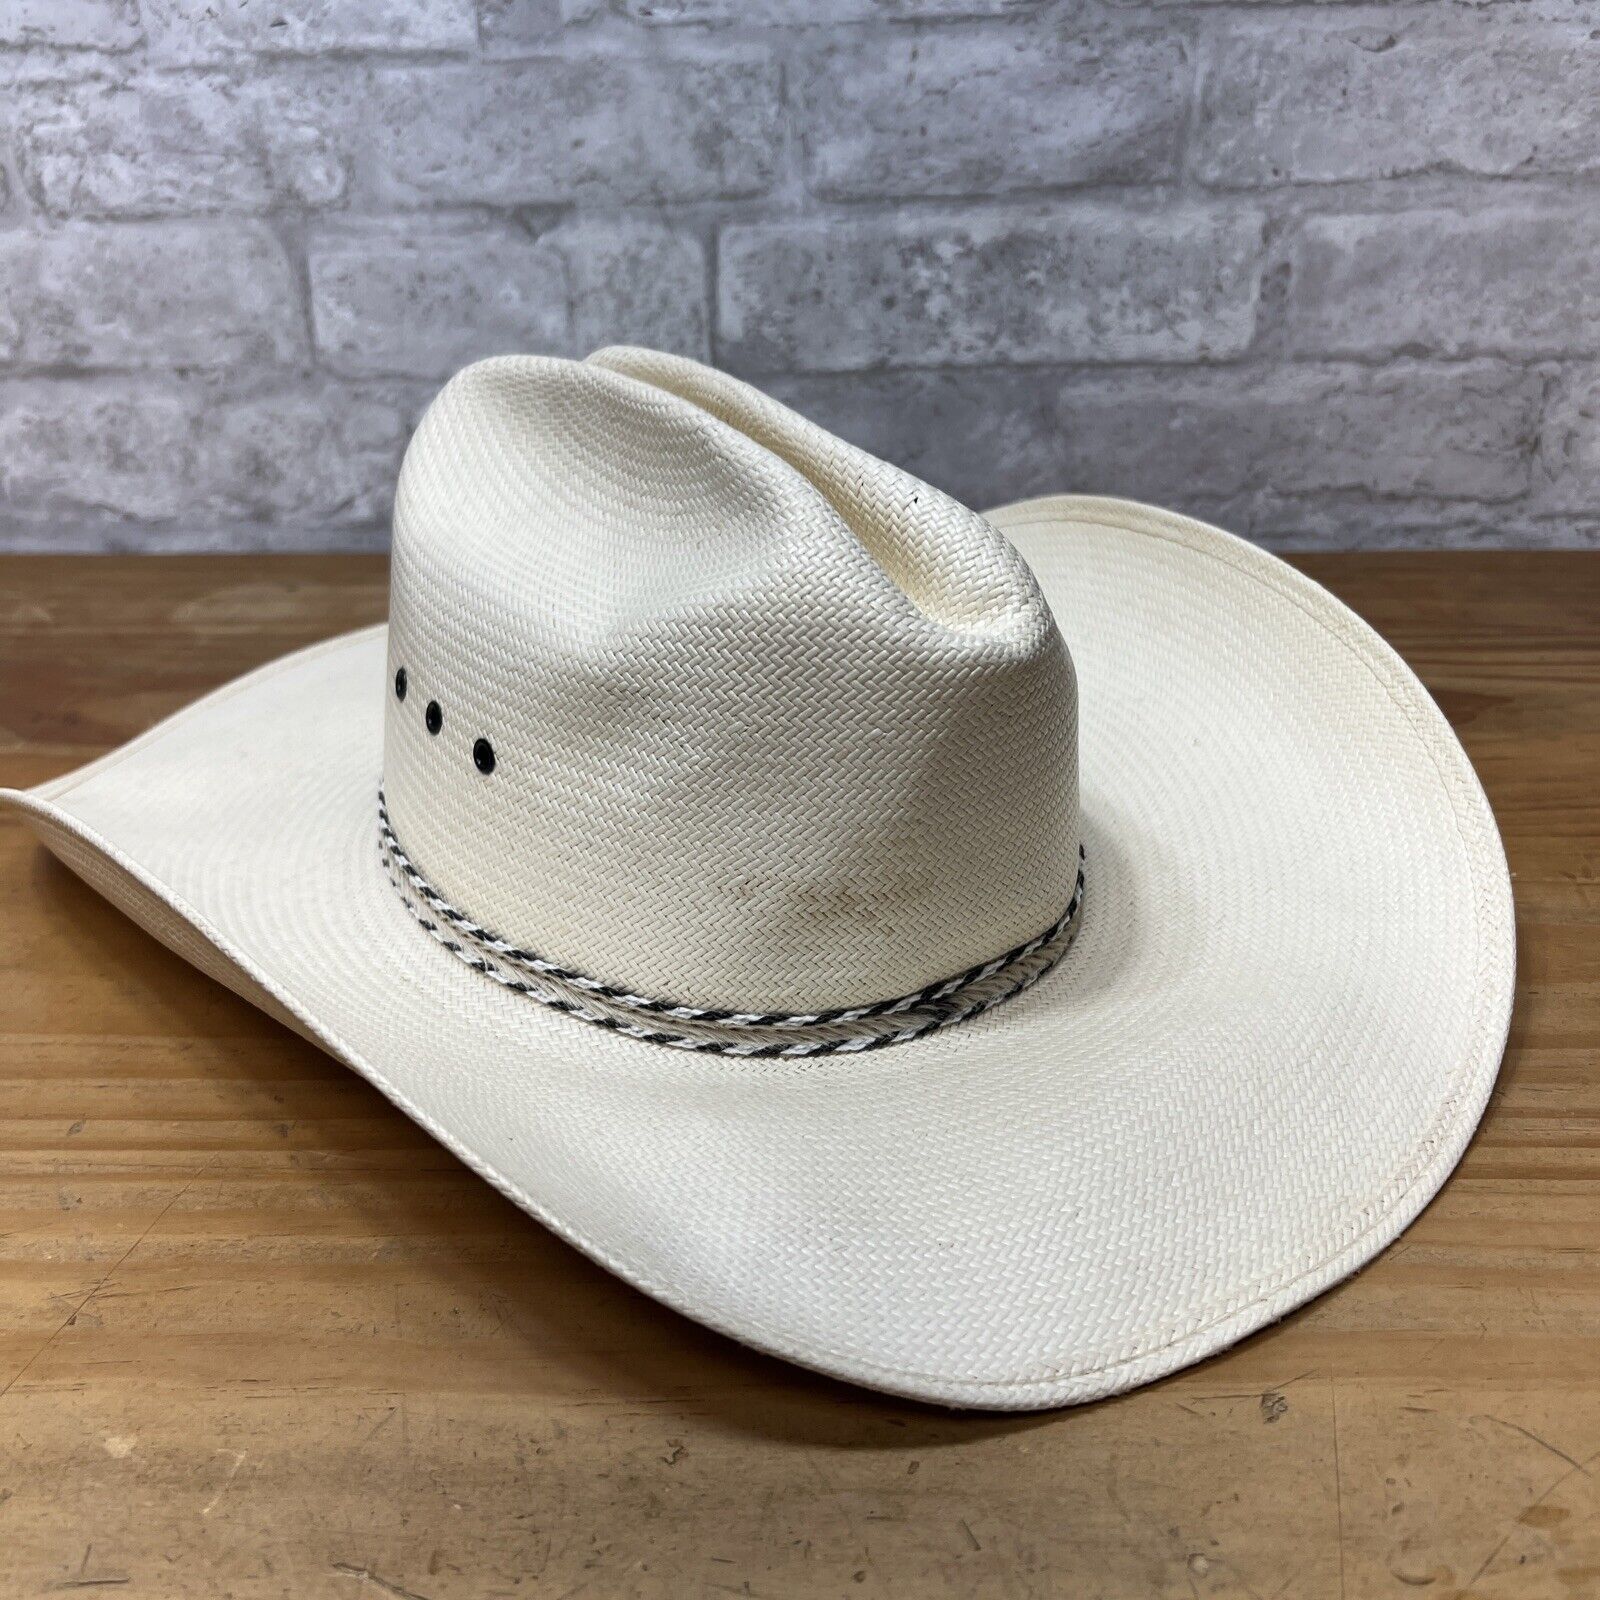 Vintage Stetson JBS XXXXXXXX 8x Straw Cowboy Western Hat Size 7 1/8 ...